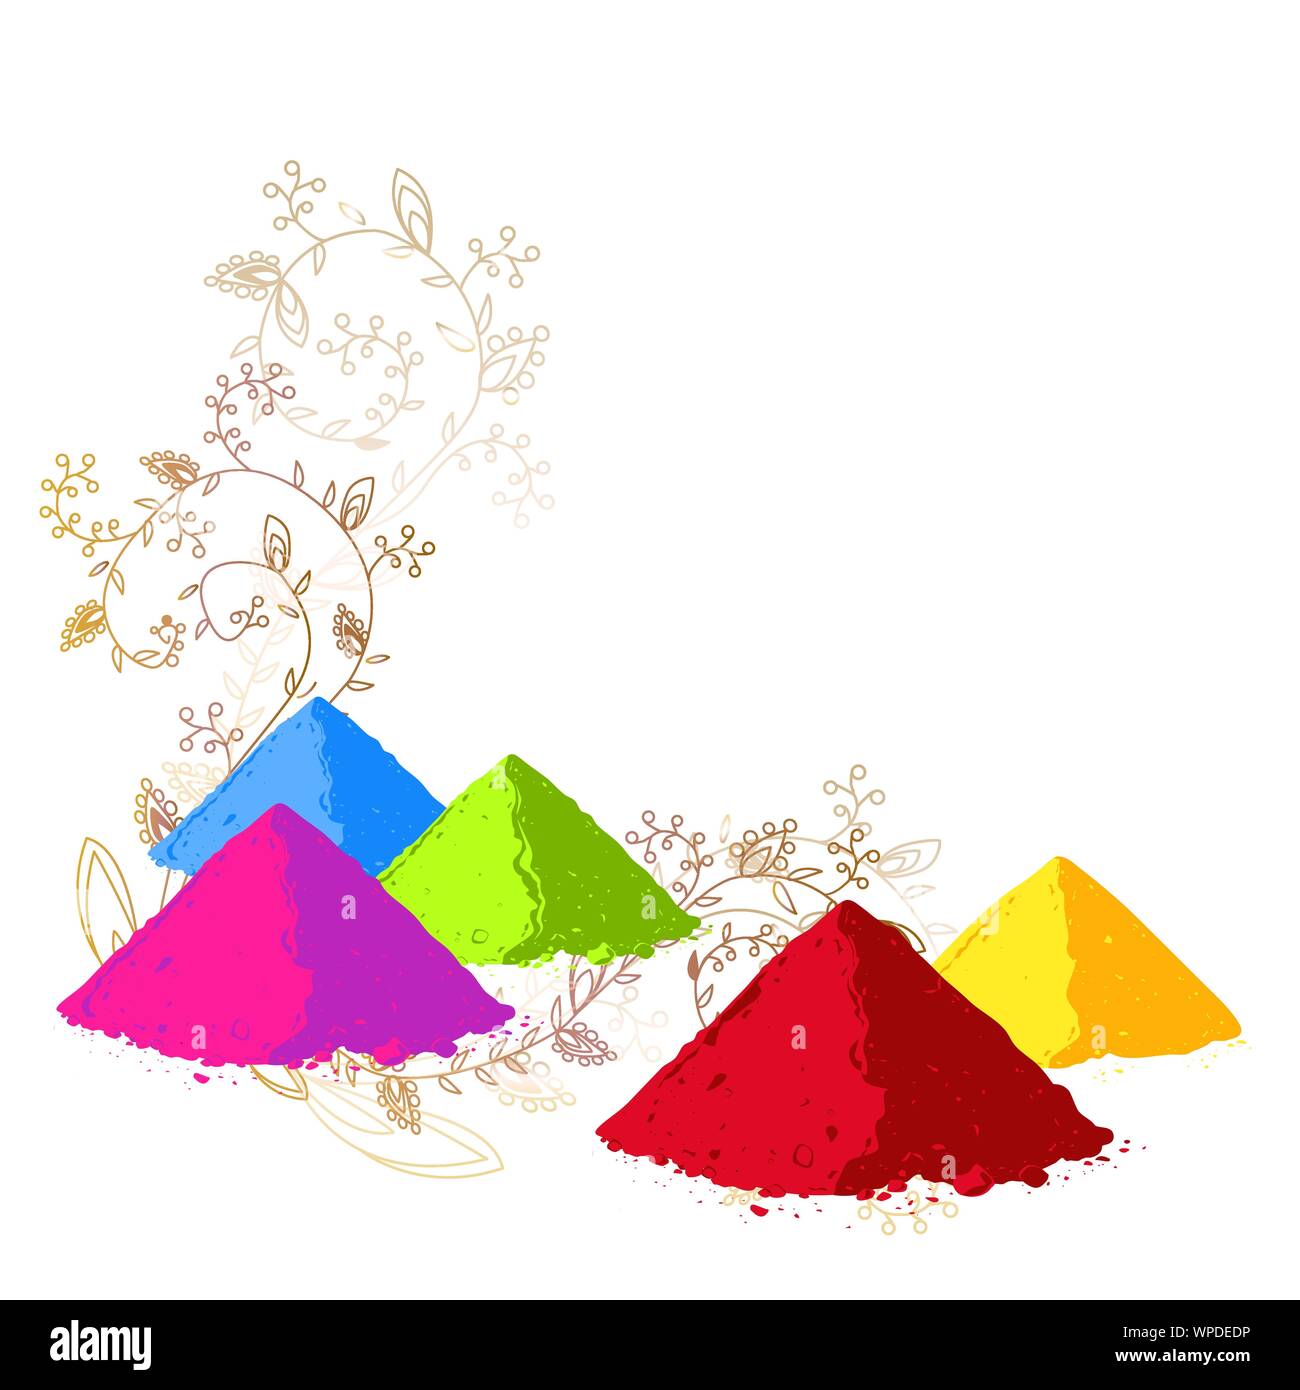 Vektor Poster, Banner oder Flyer Design für Holi Fest Party Feier, indische Festivals. Bunte Farben in Pulverform und abstraktes Ornament Hintergrund Stock Vektor